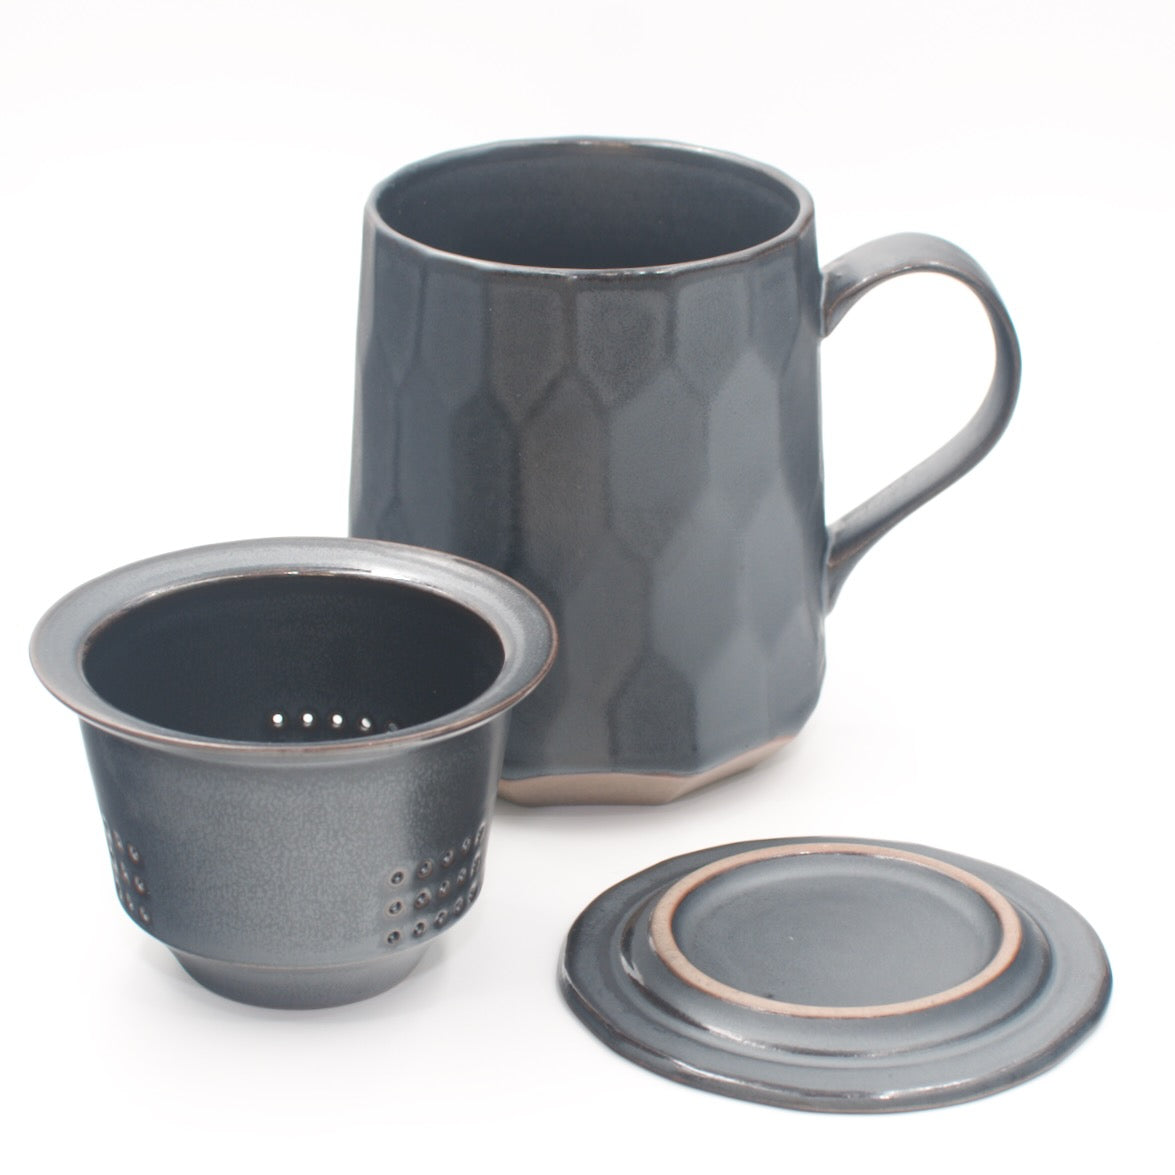 Patterned Tea Mug with Infuser